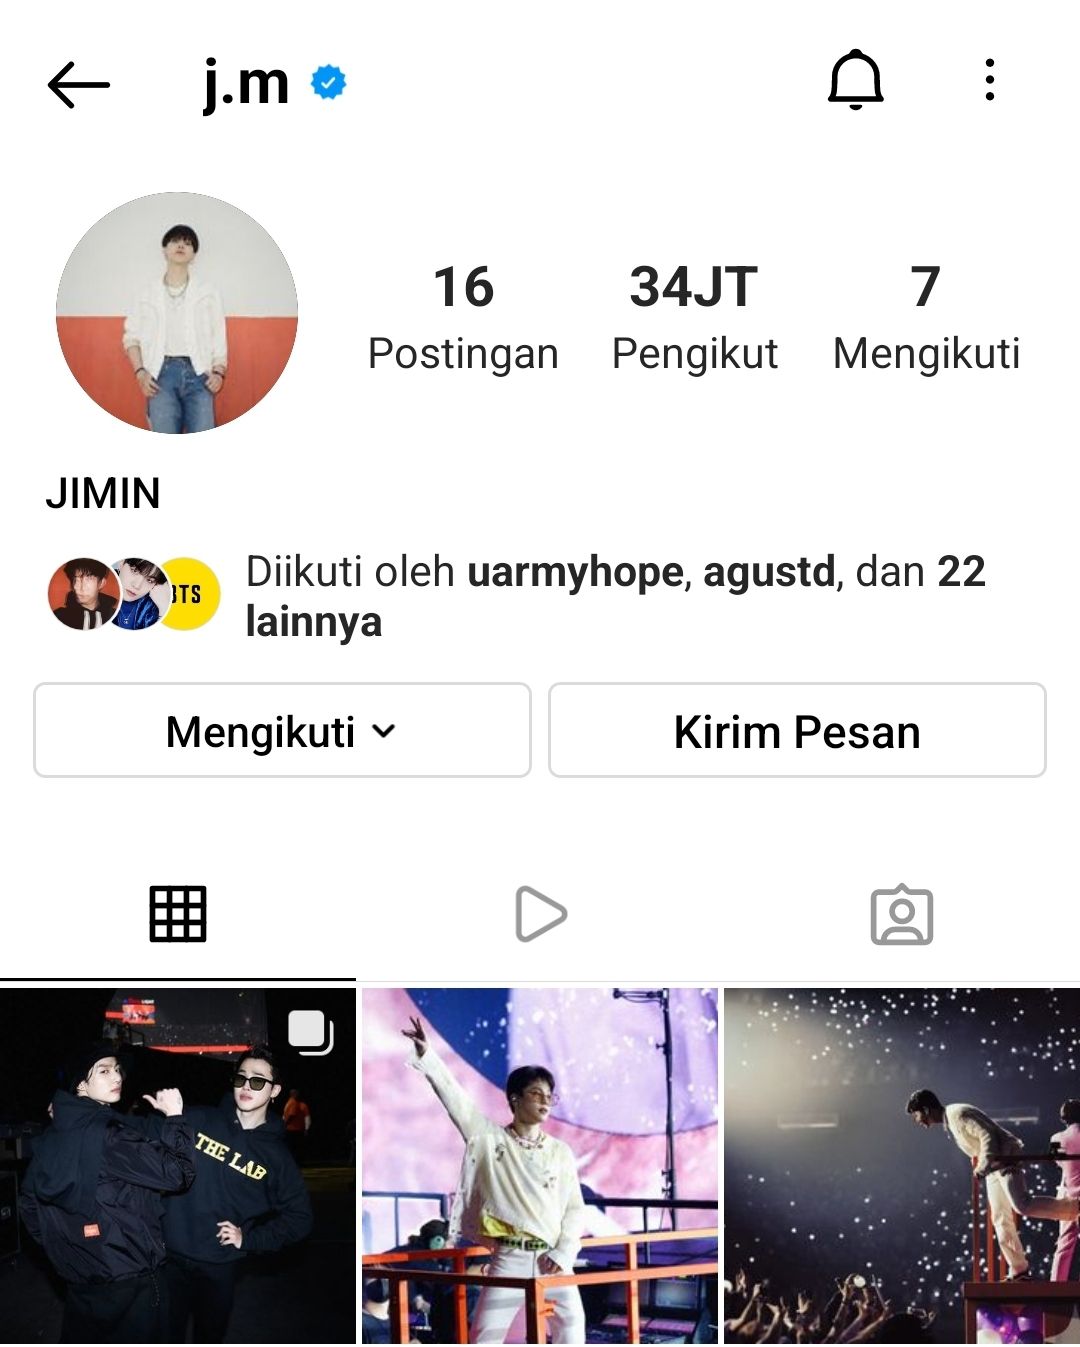 Jimin mengganti nama di Instagramnya dari JIMIN of BTS menjadi JIMIN./Instagram/@j.m